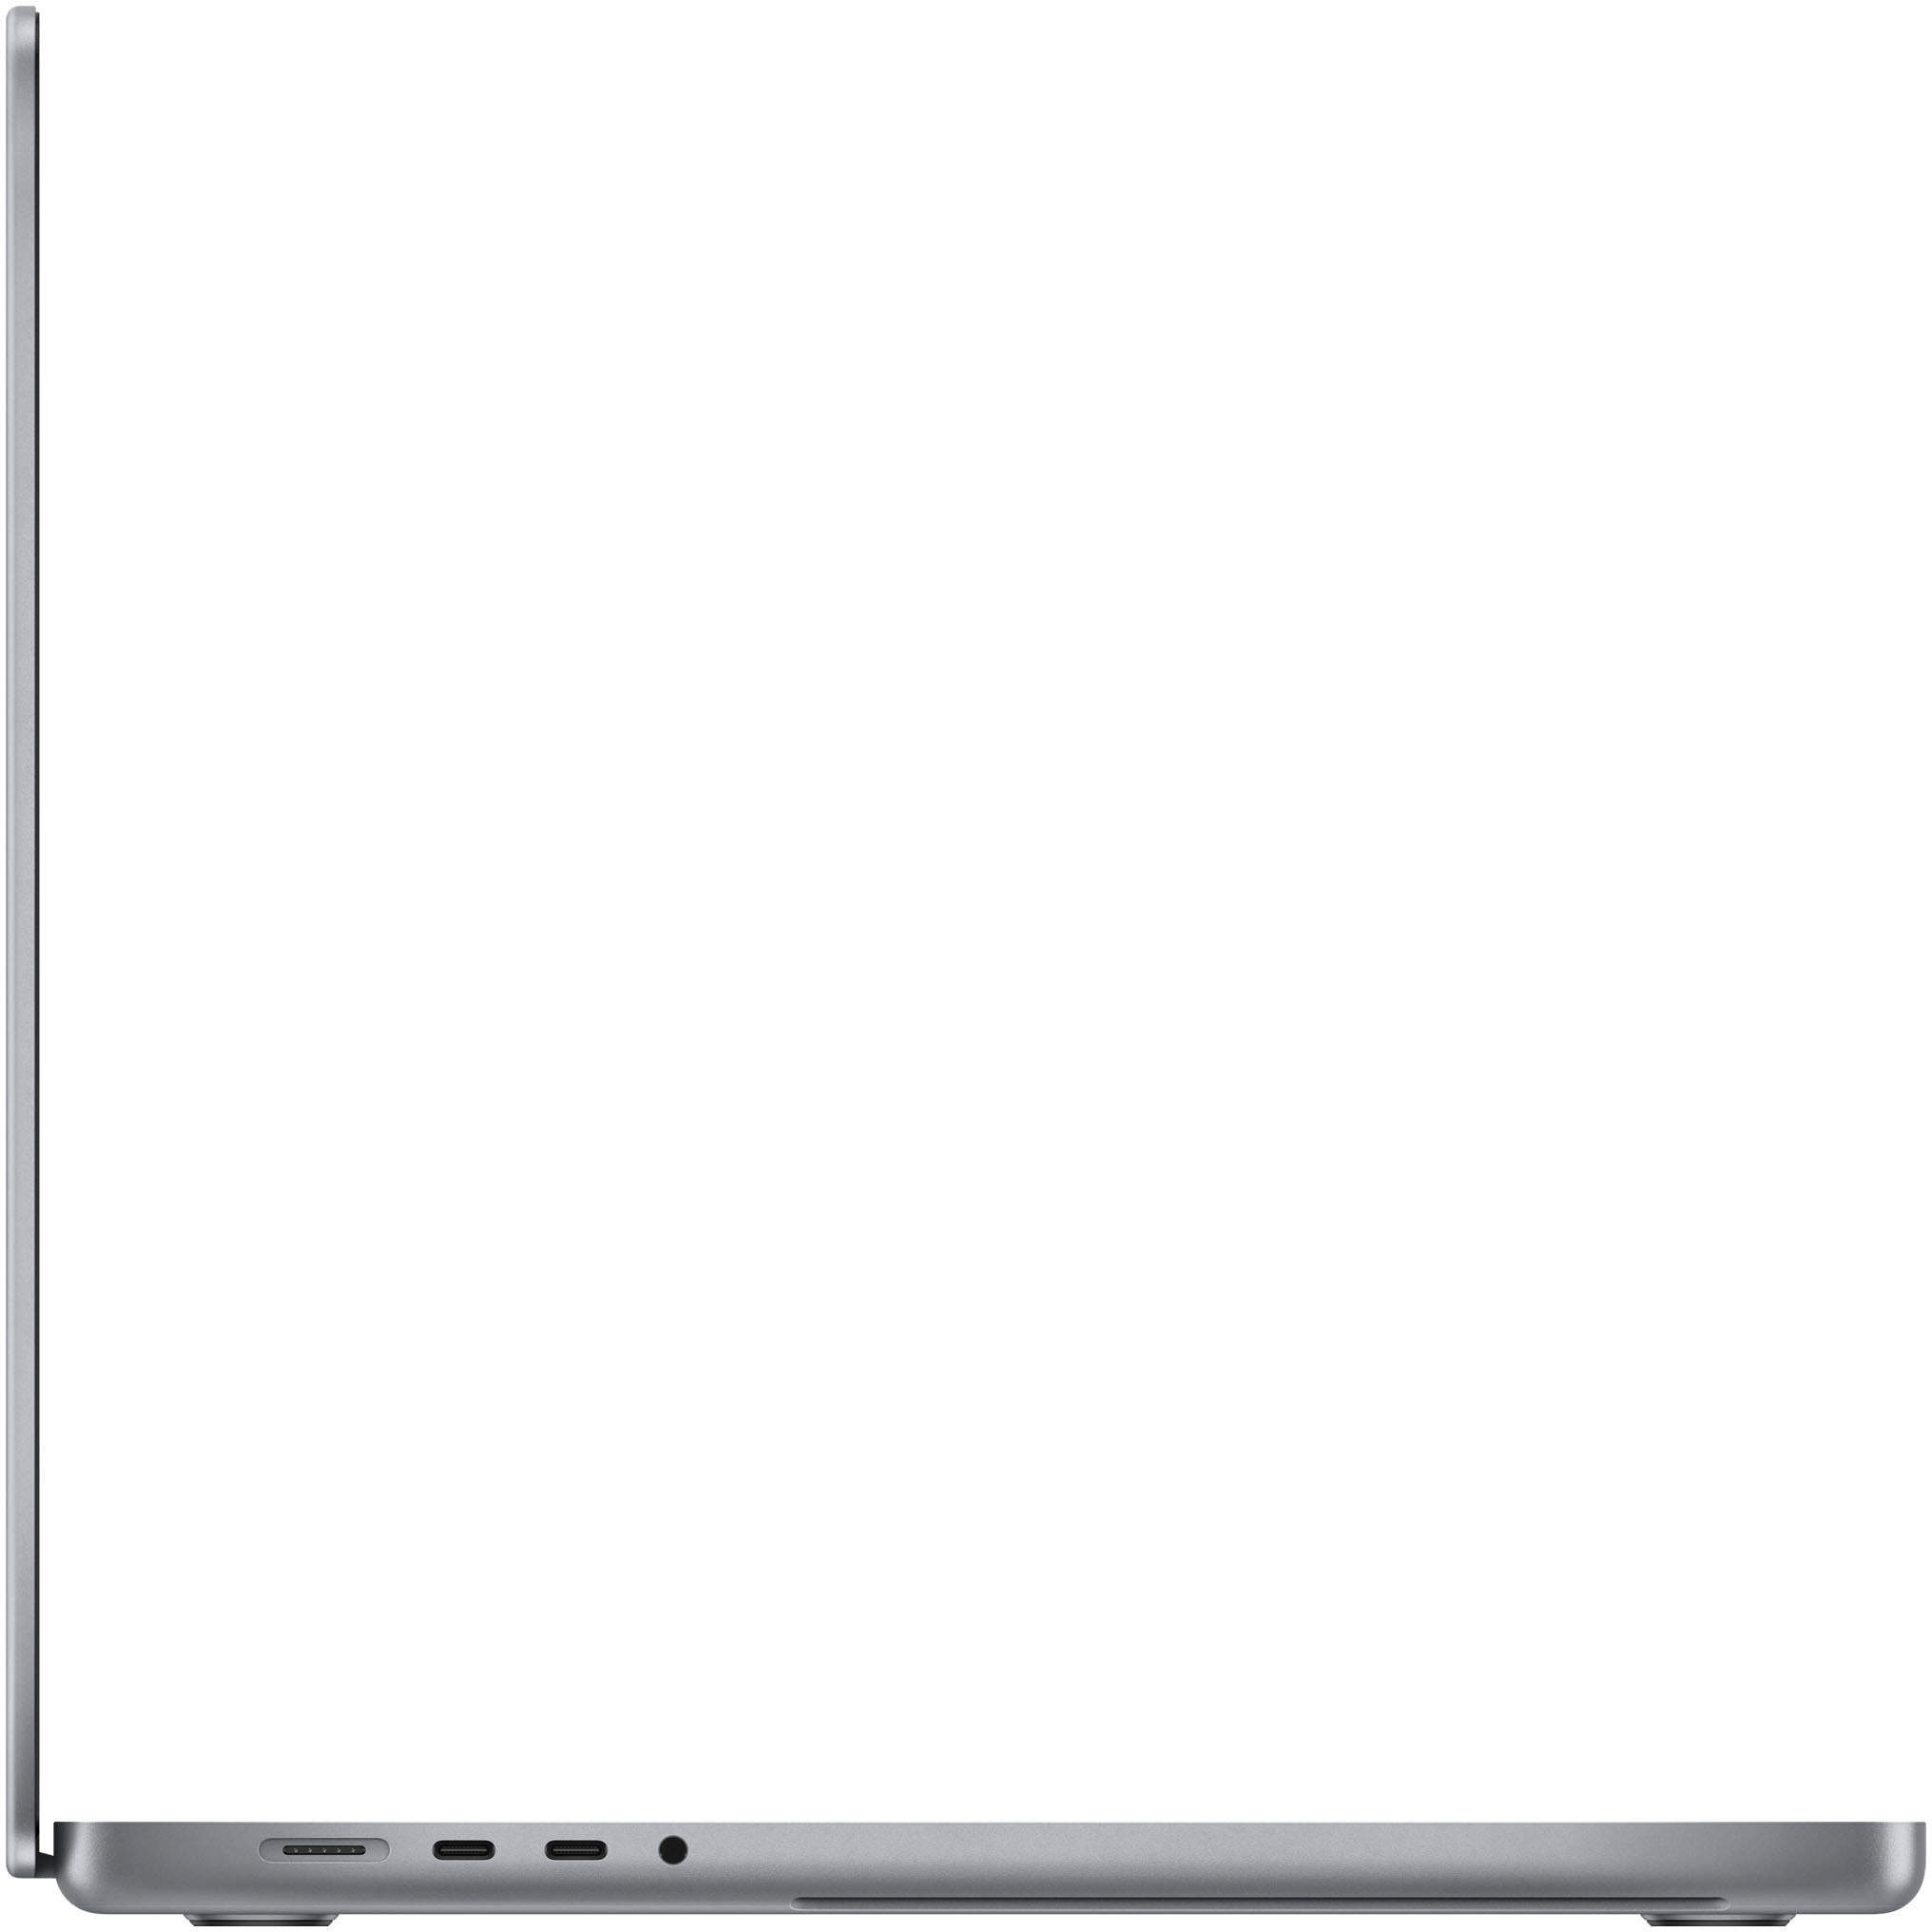 Best Buy: MacBook Pro 16